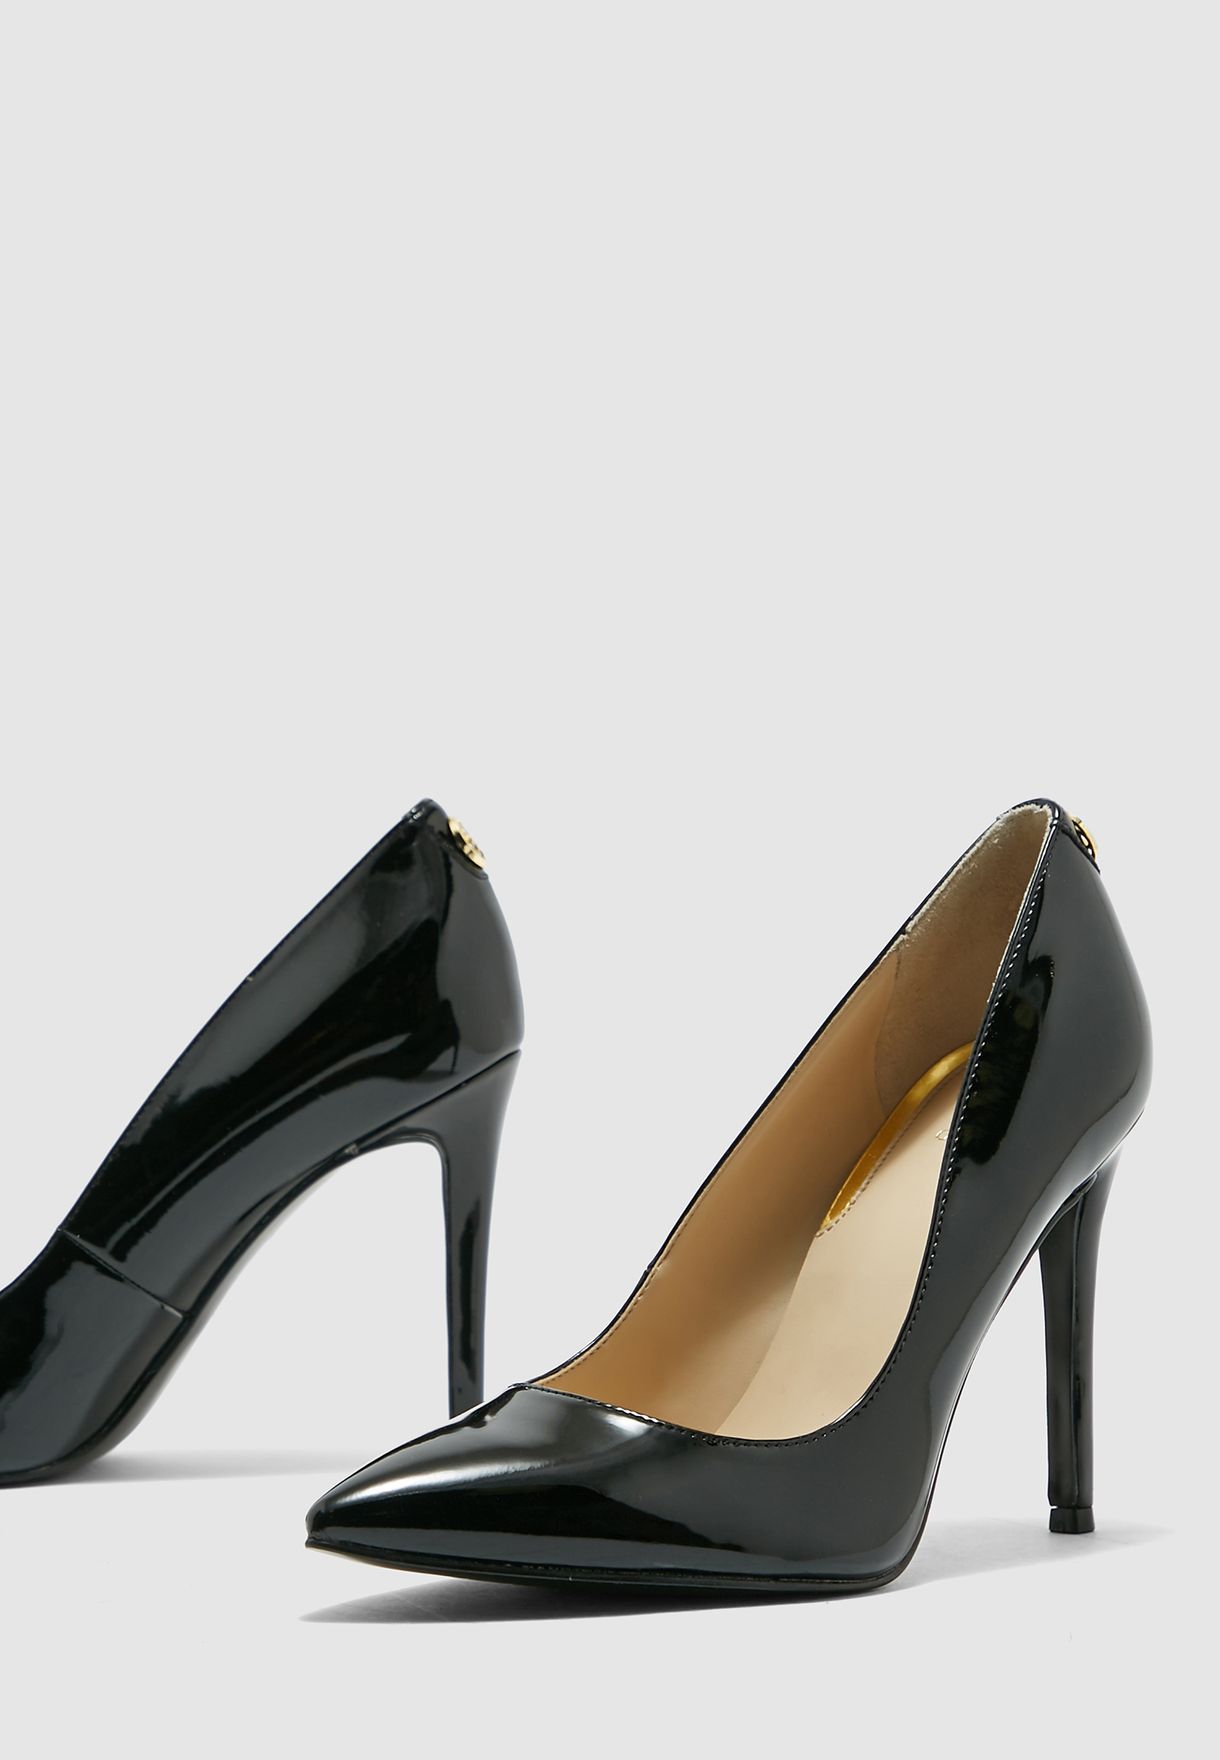 guess black heels